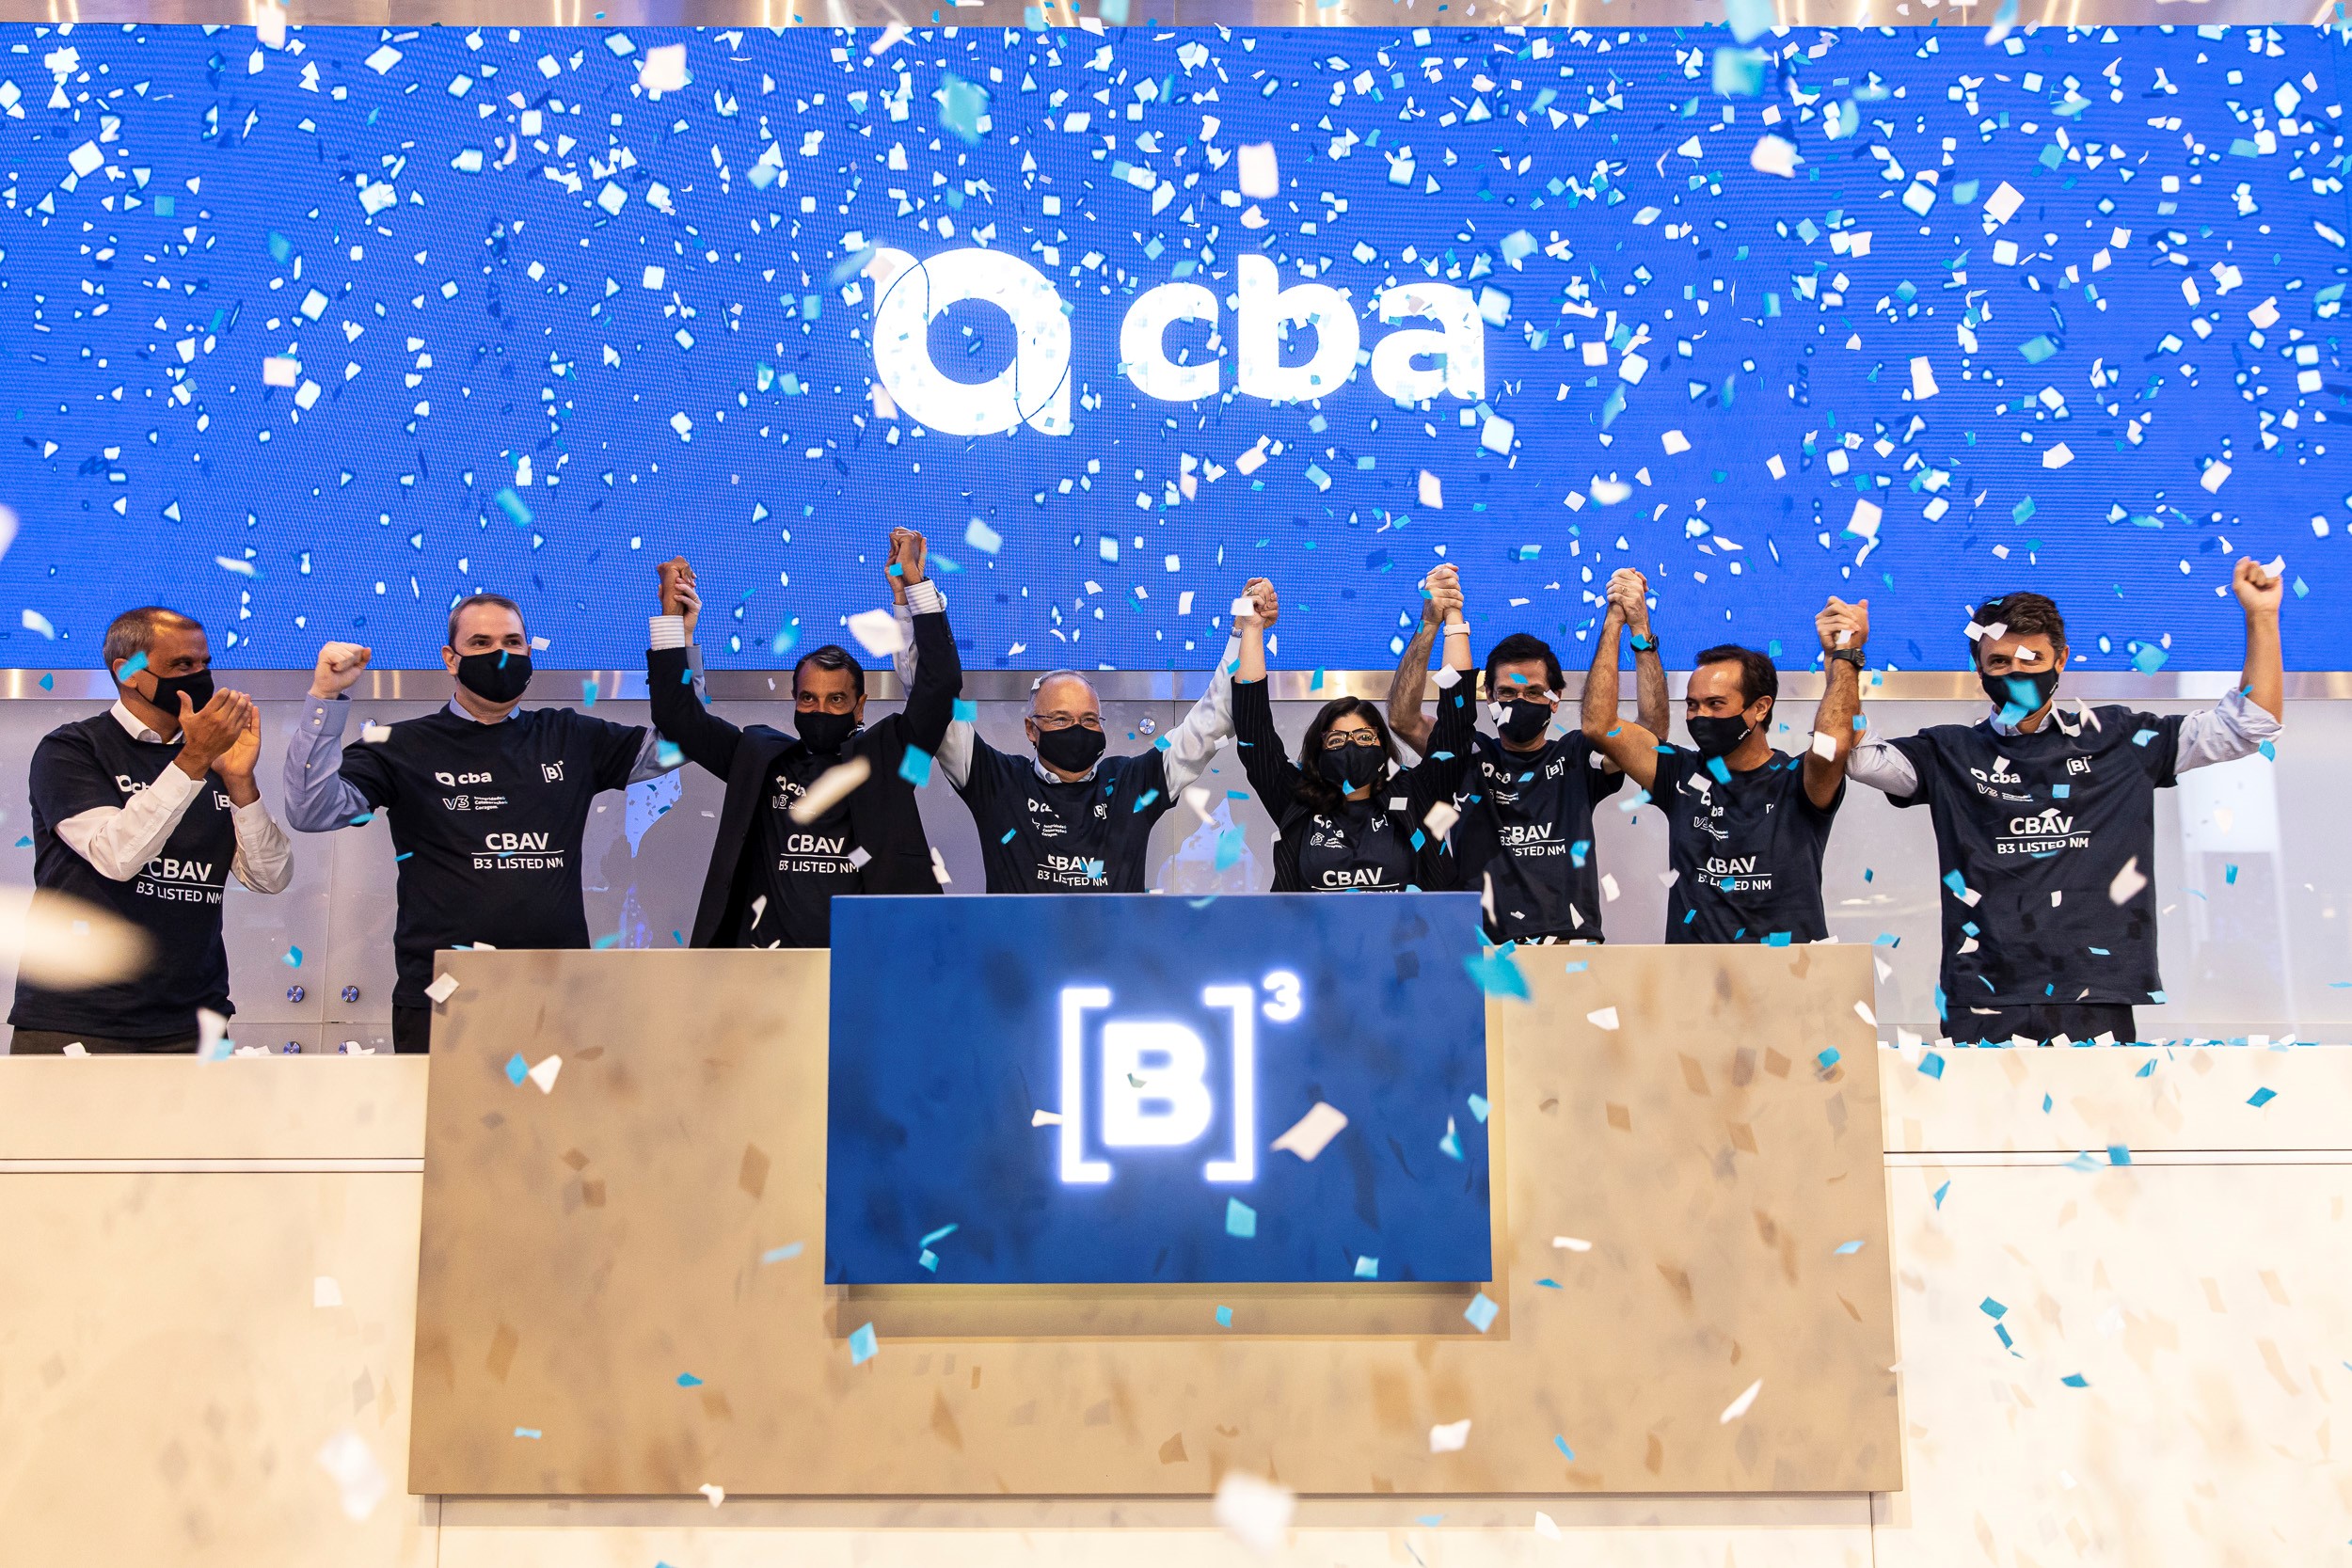 Oito pessoas de camiseta preta com logo da CBA estampado em branco erguem os braços em comemoração ao toque de campainha. Ao fundo, chuva de papel picado prata e um telão azul com logo da CBA.